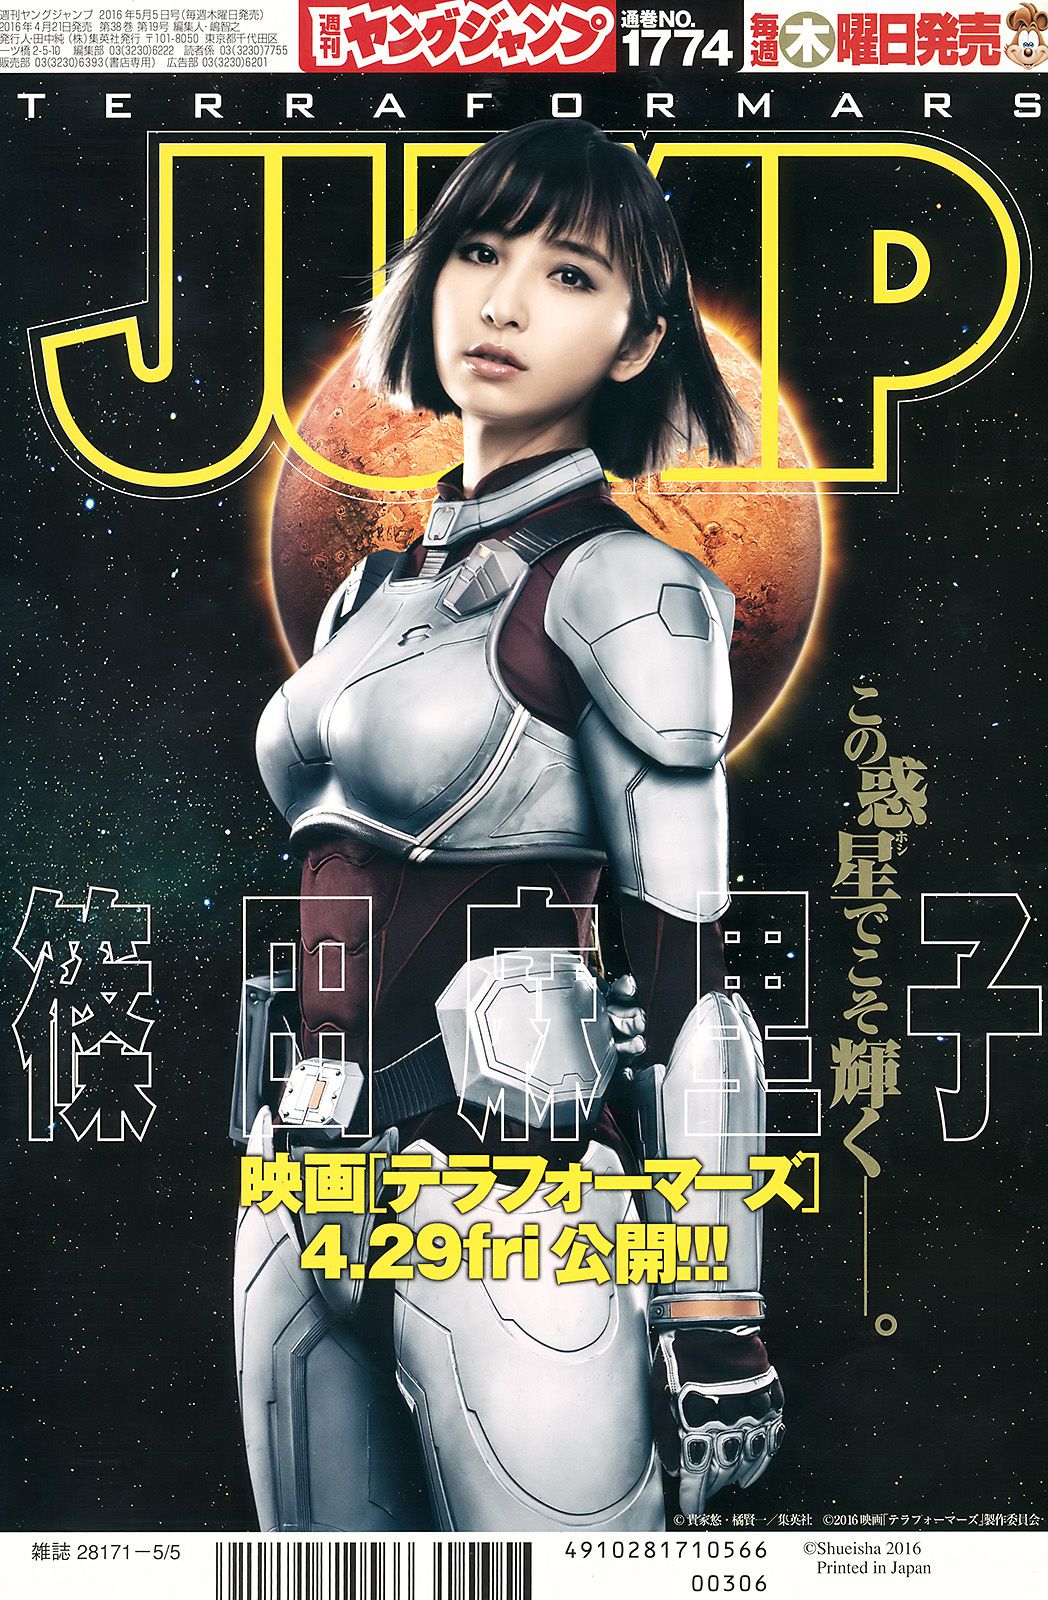 篠田麻里子 加藤里保菜 [Weekly Young Jump] 2016年No.21 写真杂志/(15P)